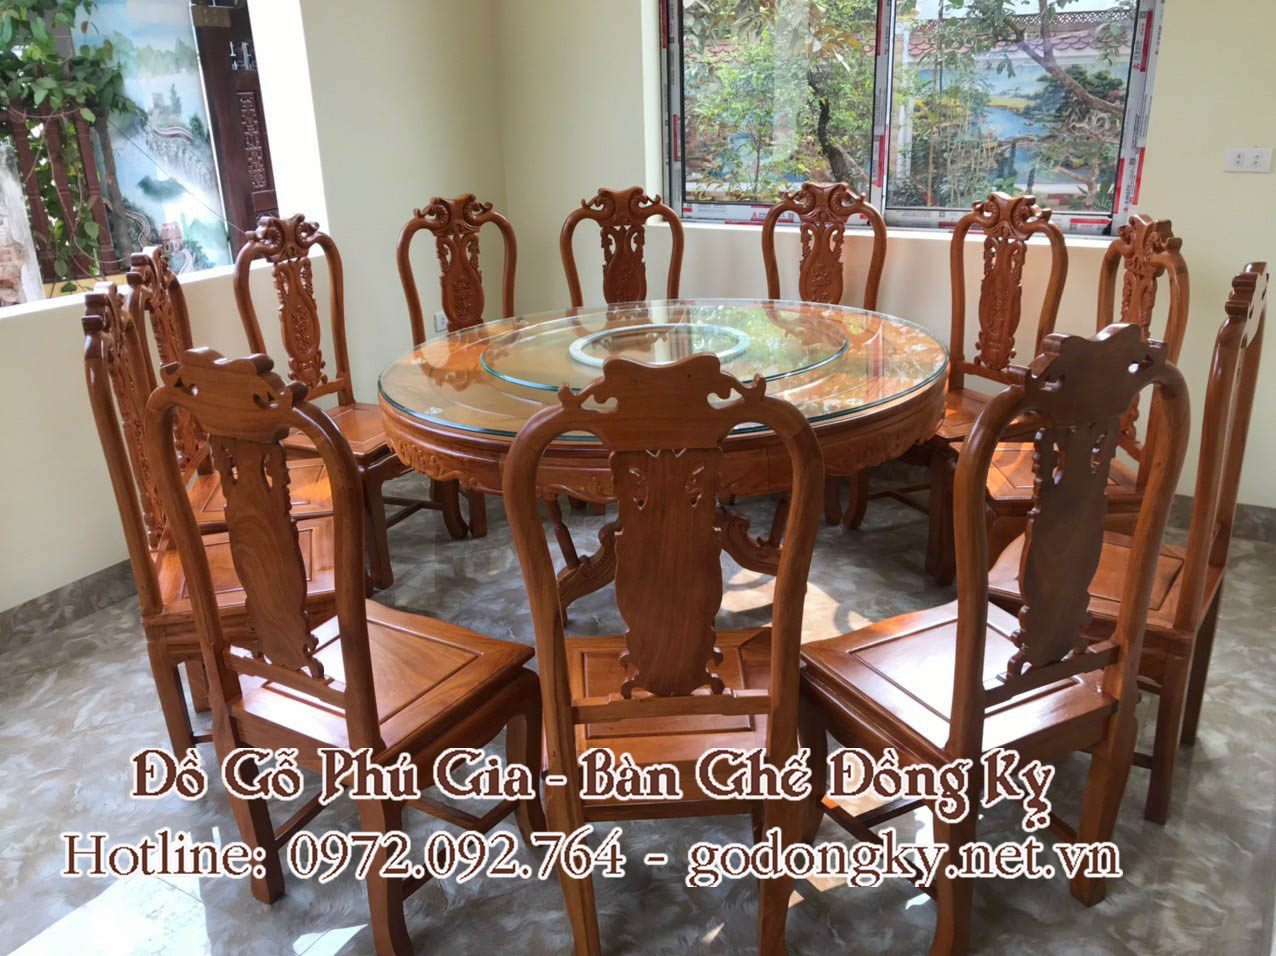 Nội, ngoại thất: Tổng hợp các mẫu bàn ghế phòng ăn mặt tròn đồ gỗ đồng kỵ 20